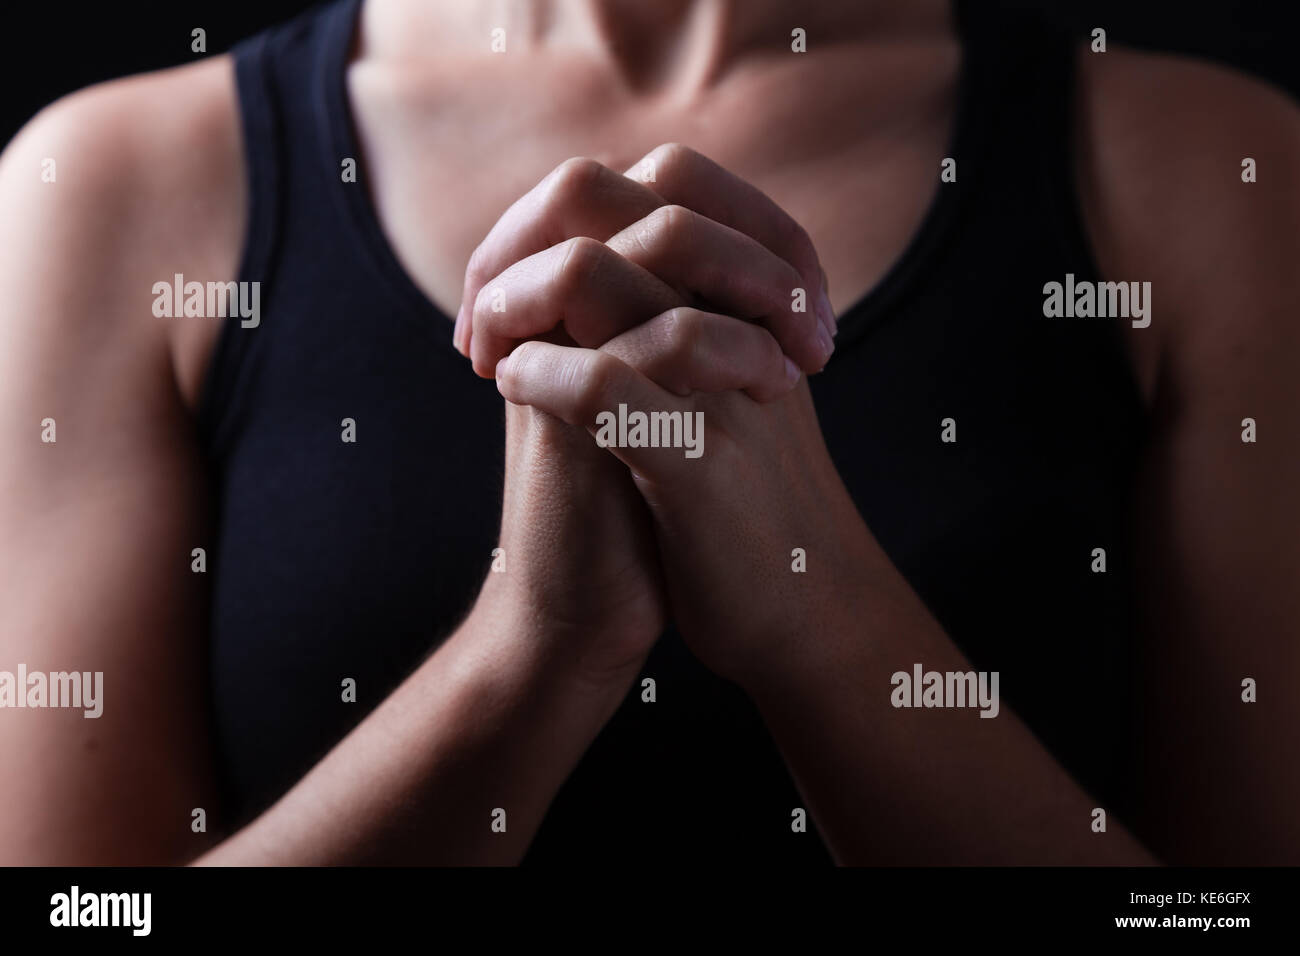 Mains de femme fidèles priant, les mains croisées, les doigts entrelacés dans le culte à Dieu / prier la prière chrétienne catholique culte adorateur plié Banque D'Images